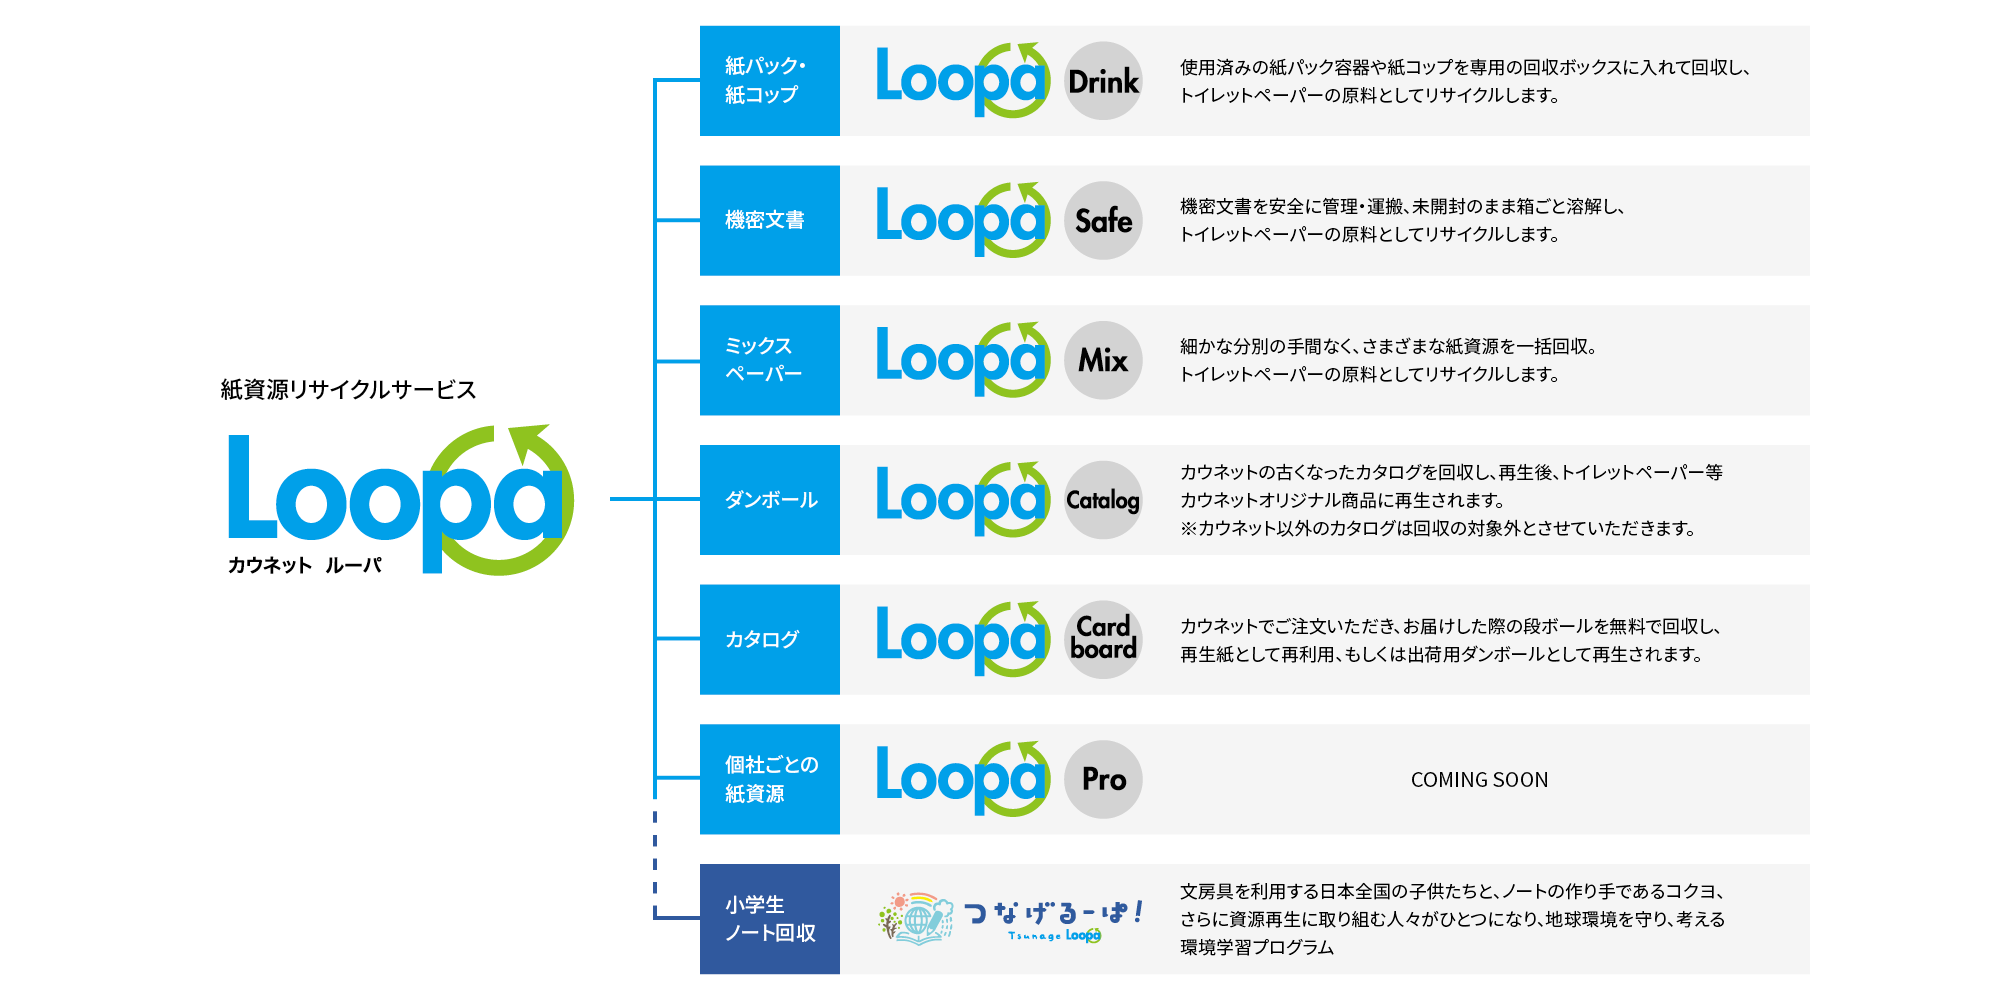 Loopaサービス全体について